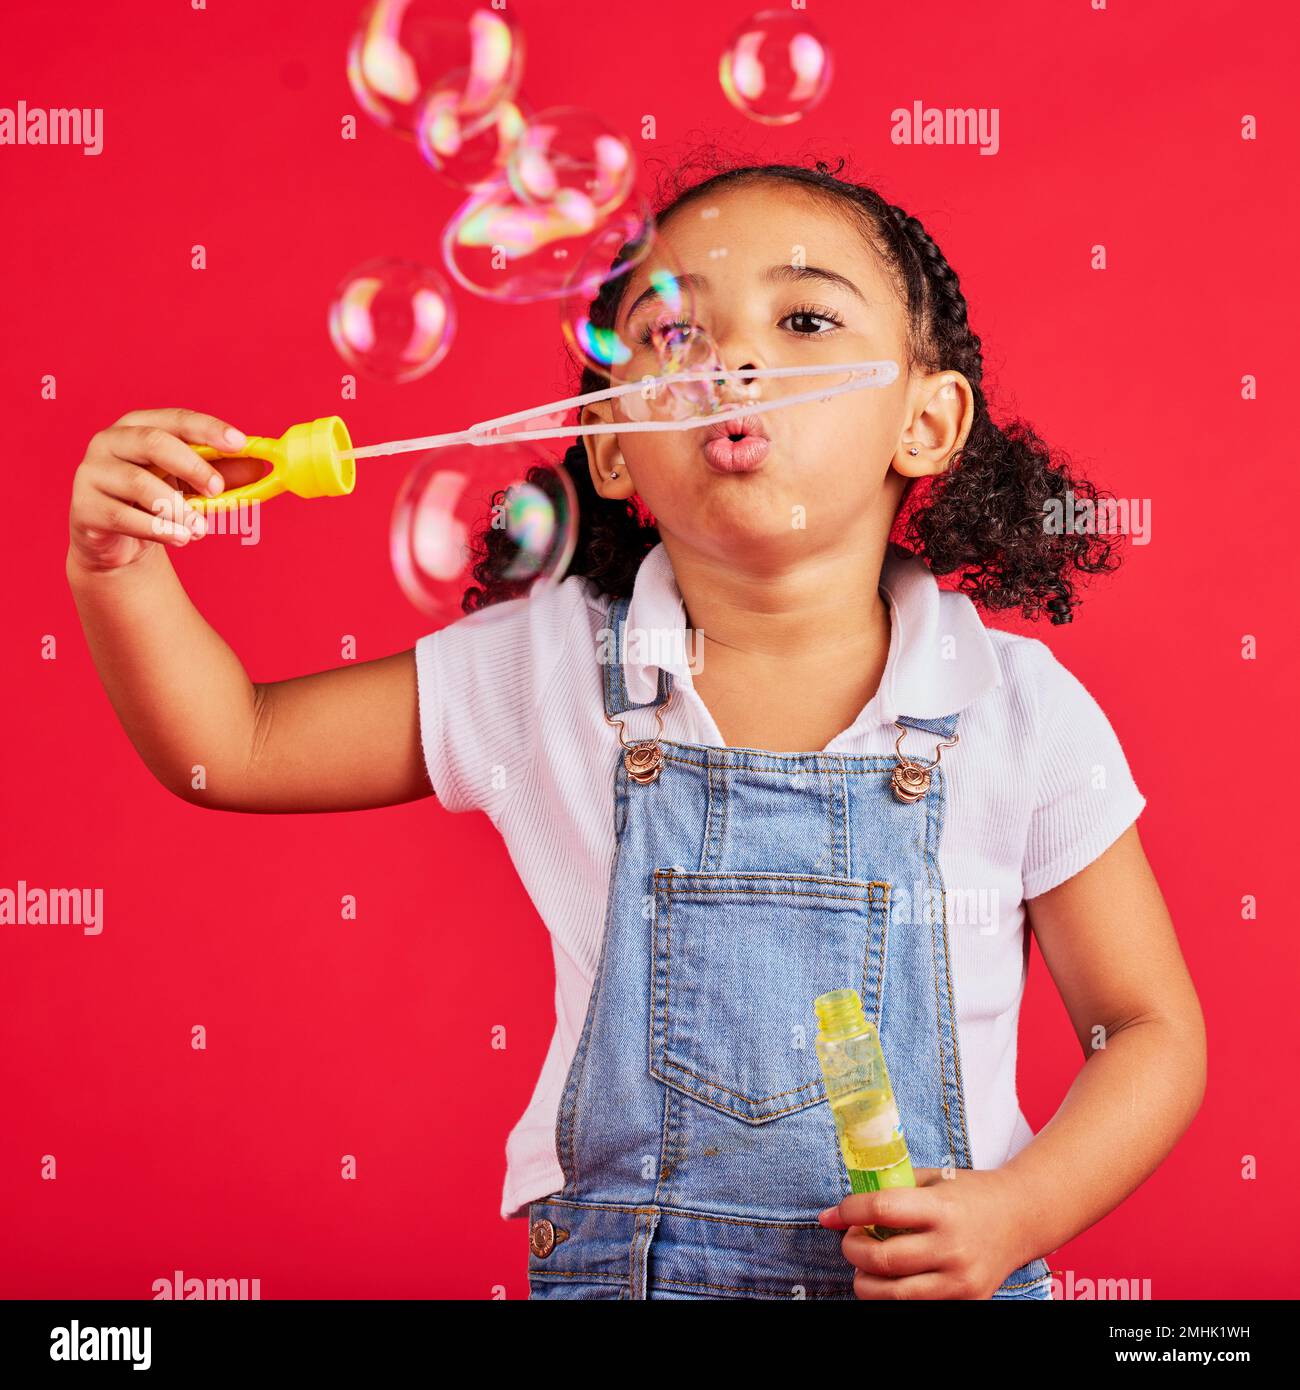 Kleines Mädchen, spielt oder bläst Luftblasen auf isoliertem rotem Hintergrund bei Hand-Augen-Koordination, Aktivität oder lustigem Spiel. Kind, Kind oder Jugend mit Seife, Zauberstab Stockfoto